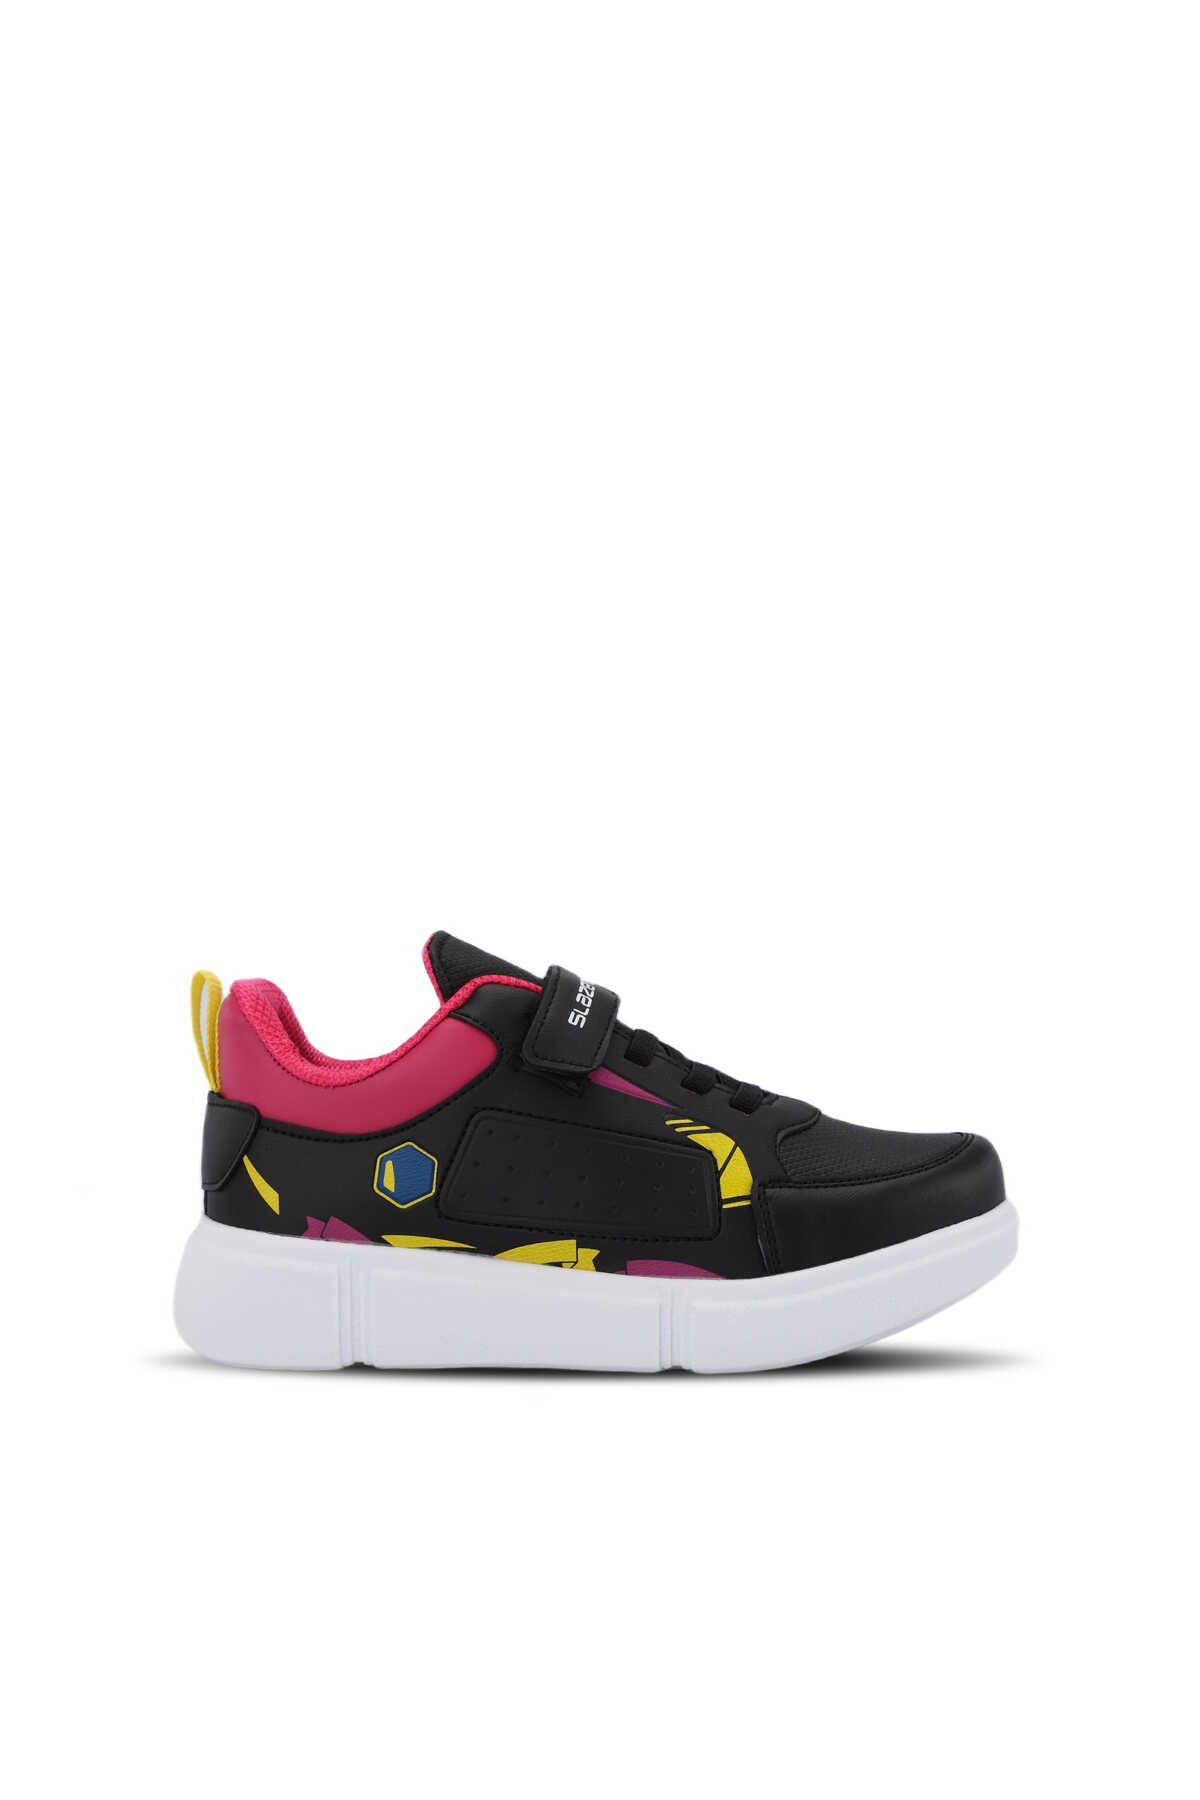 Slazenger - KEPA KTN Sneaker Kız Çocuk Ayakkabı Siyah / Fuşya